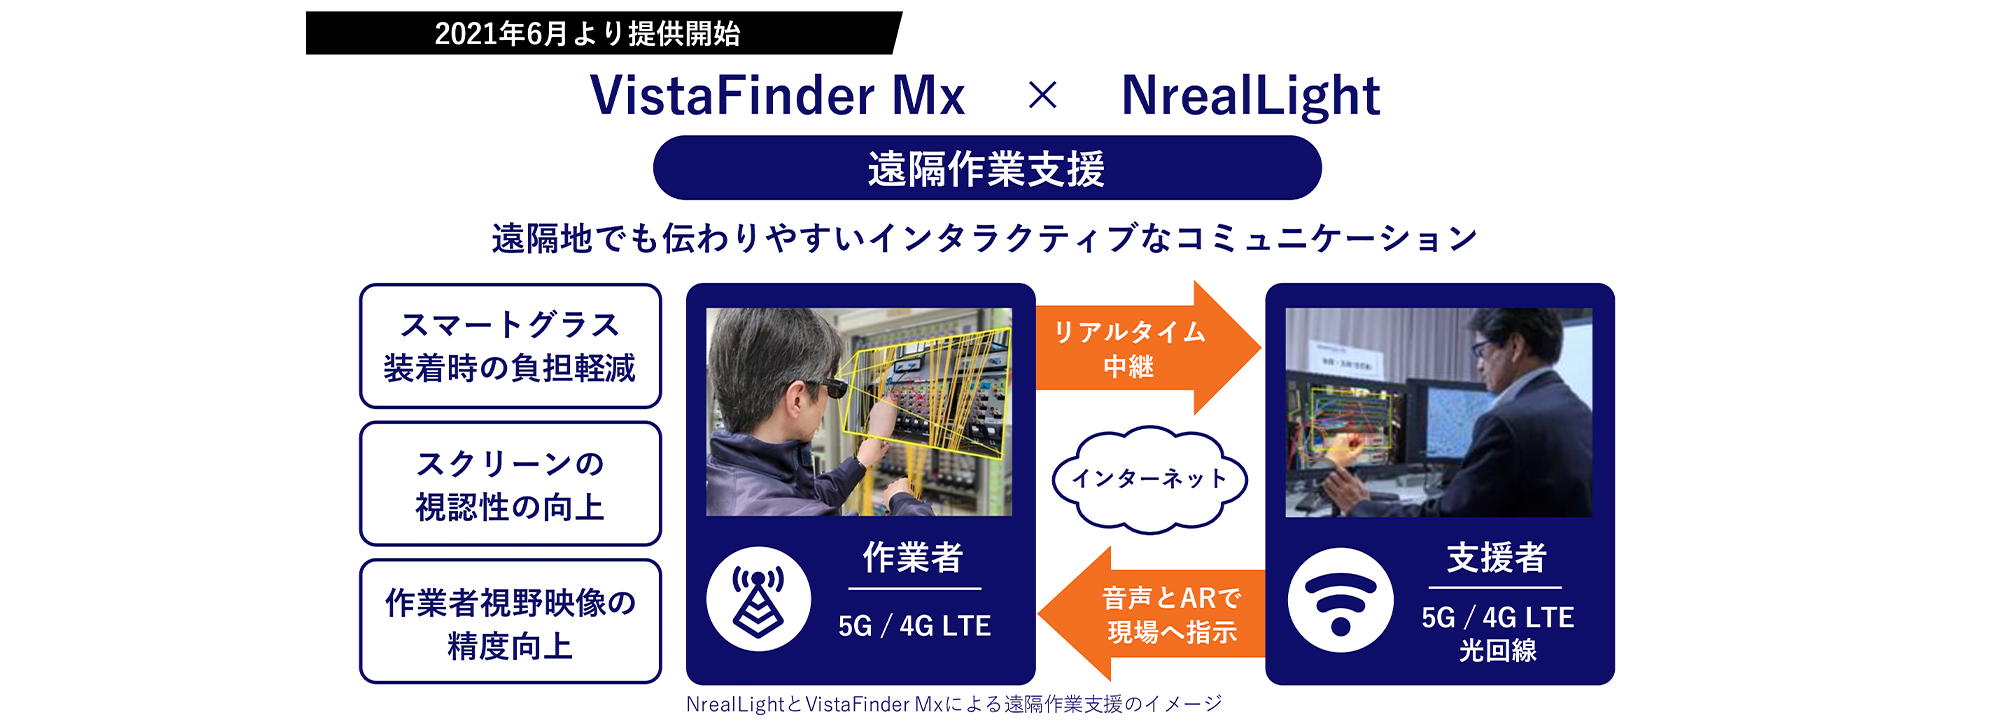 VistaFinder Mx × NrealLight (遠隔作業支援)遠隔地でも伝わりやすいインタラクティブなコミュニケーション スマートグラス。インターネットを利用し、作業者よりリアルタイム中継を支援者へ送信することで、音声とARで現場へ指示を出せる。